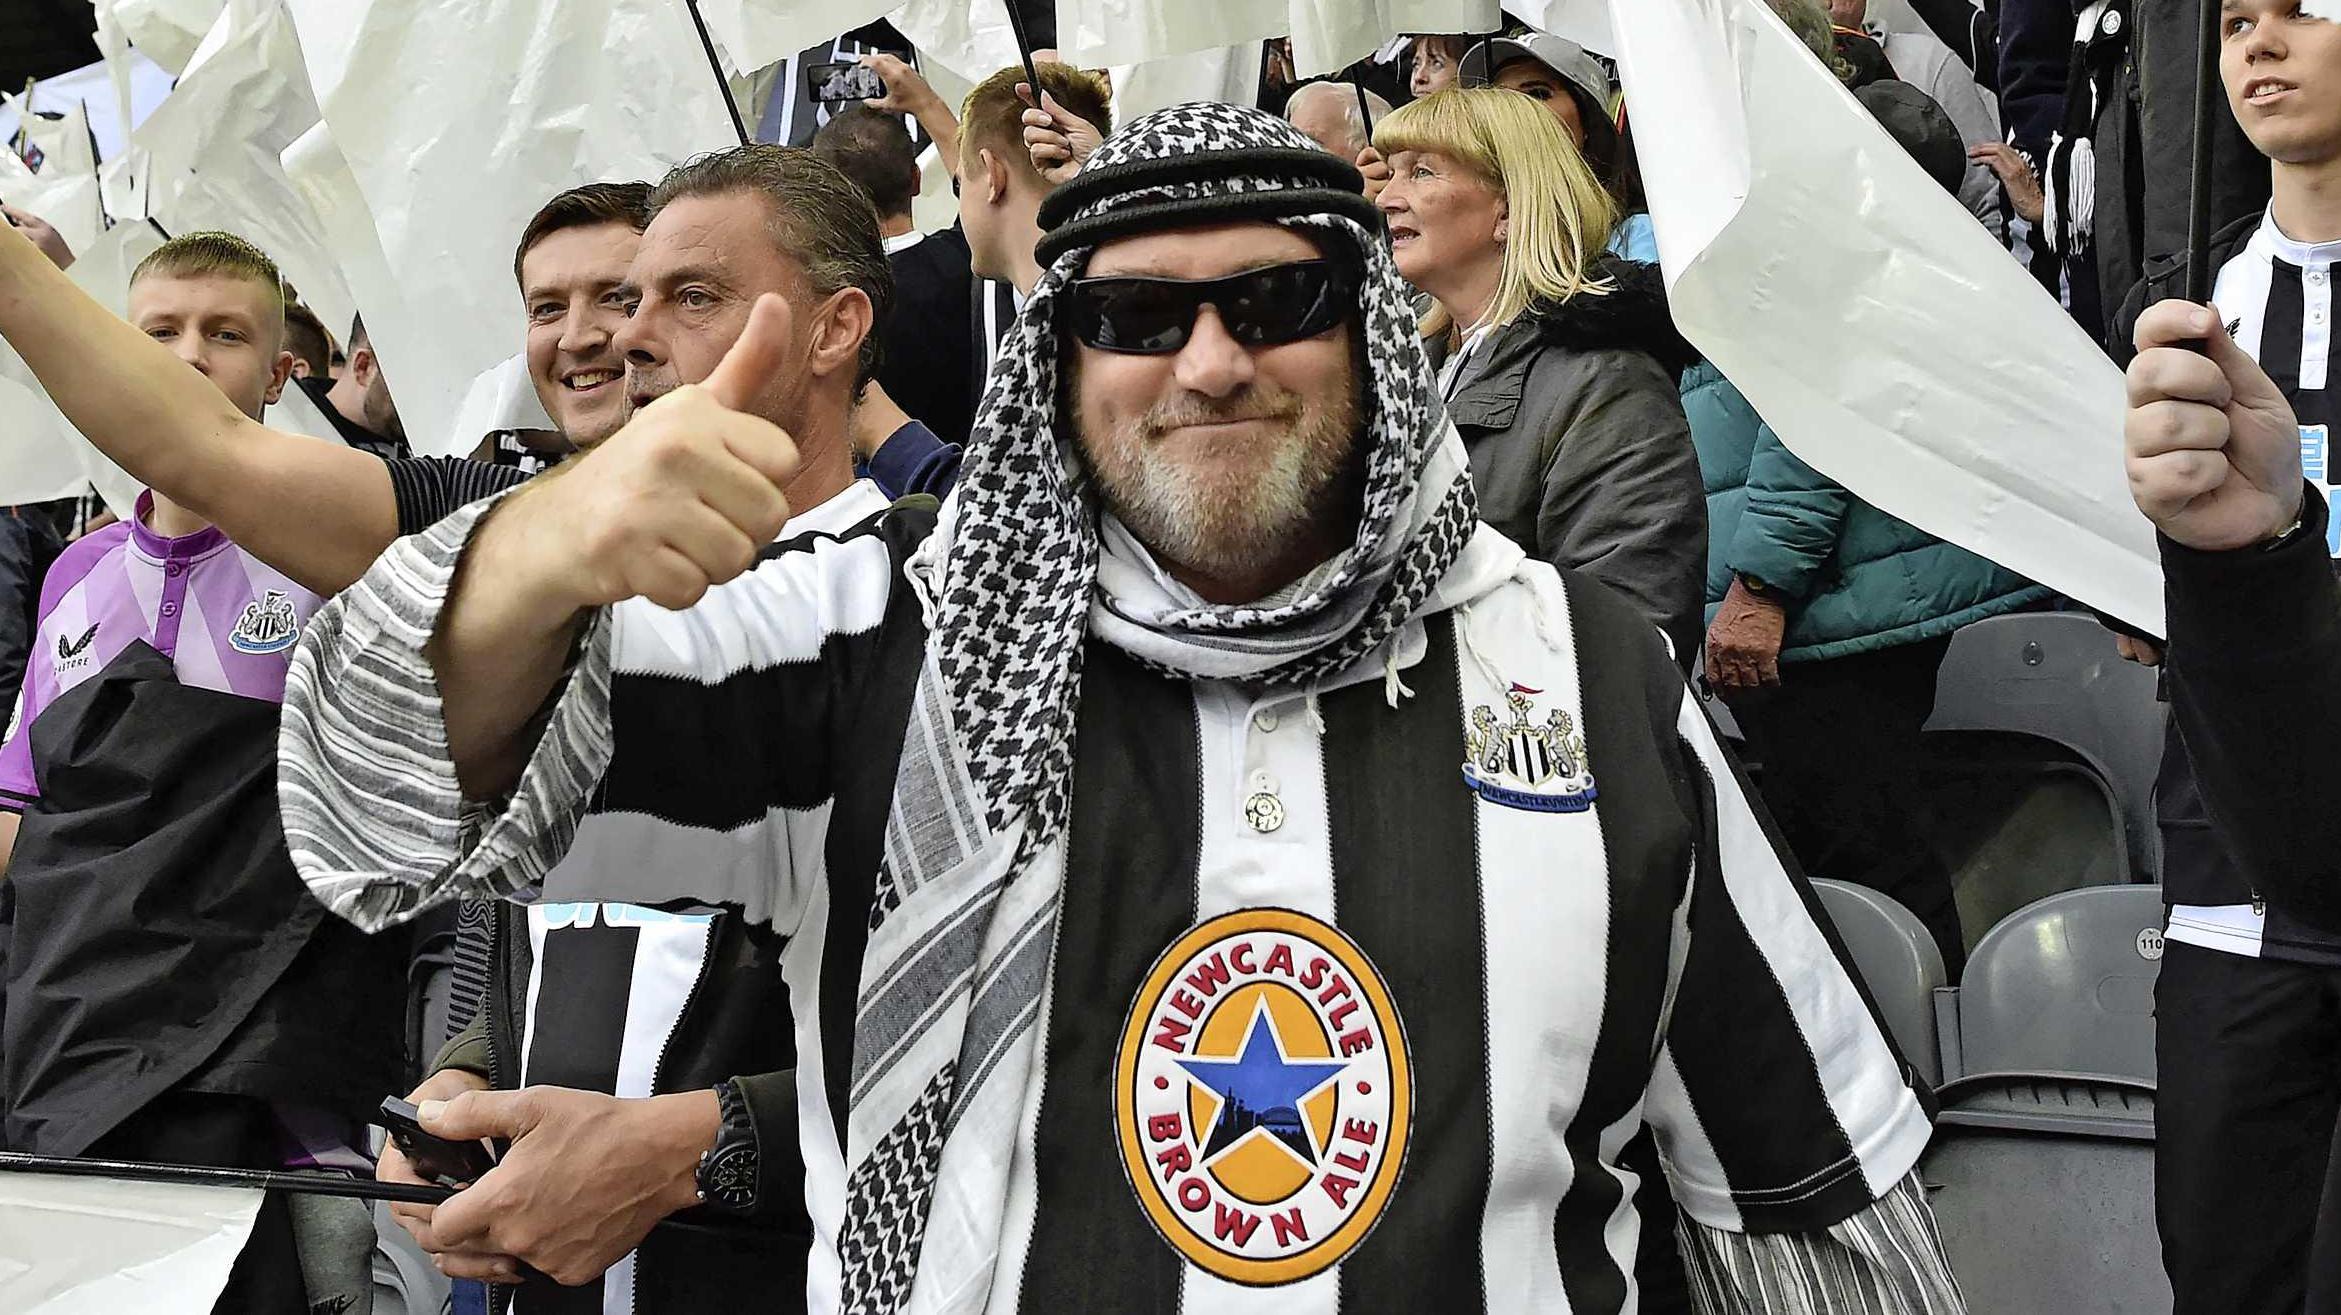 Newcastle United verzoekt fans geen Arabische kleding in stadion meer te dragen Voetbal Telegraaf.nl